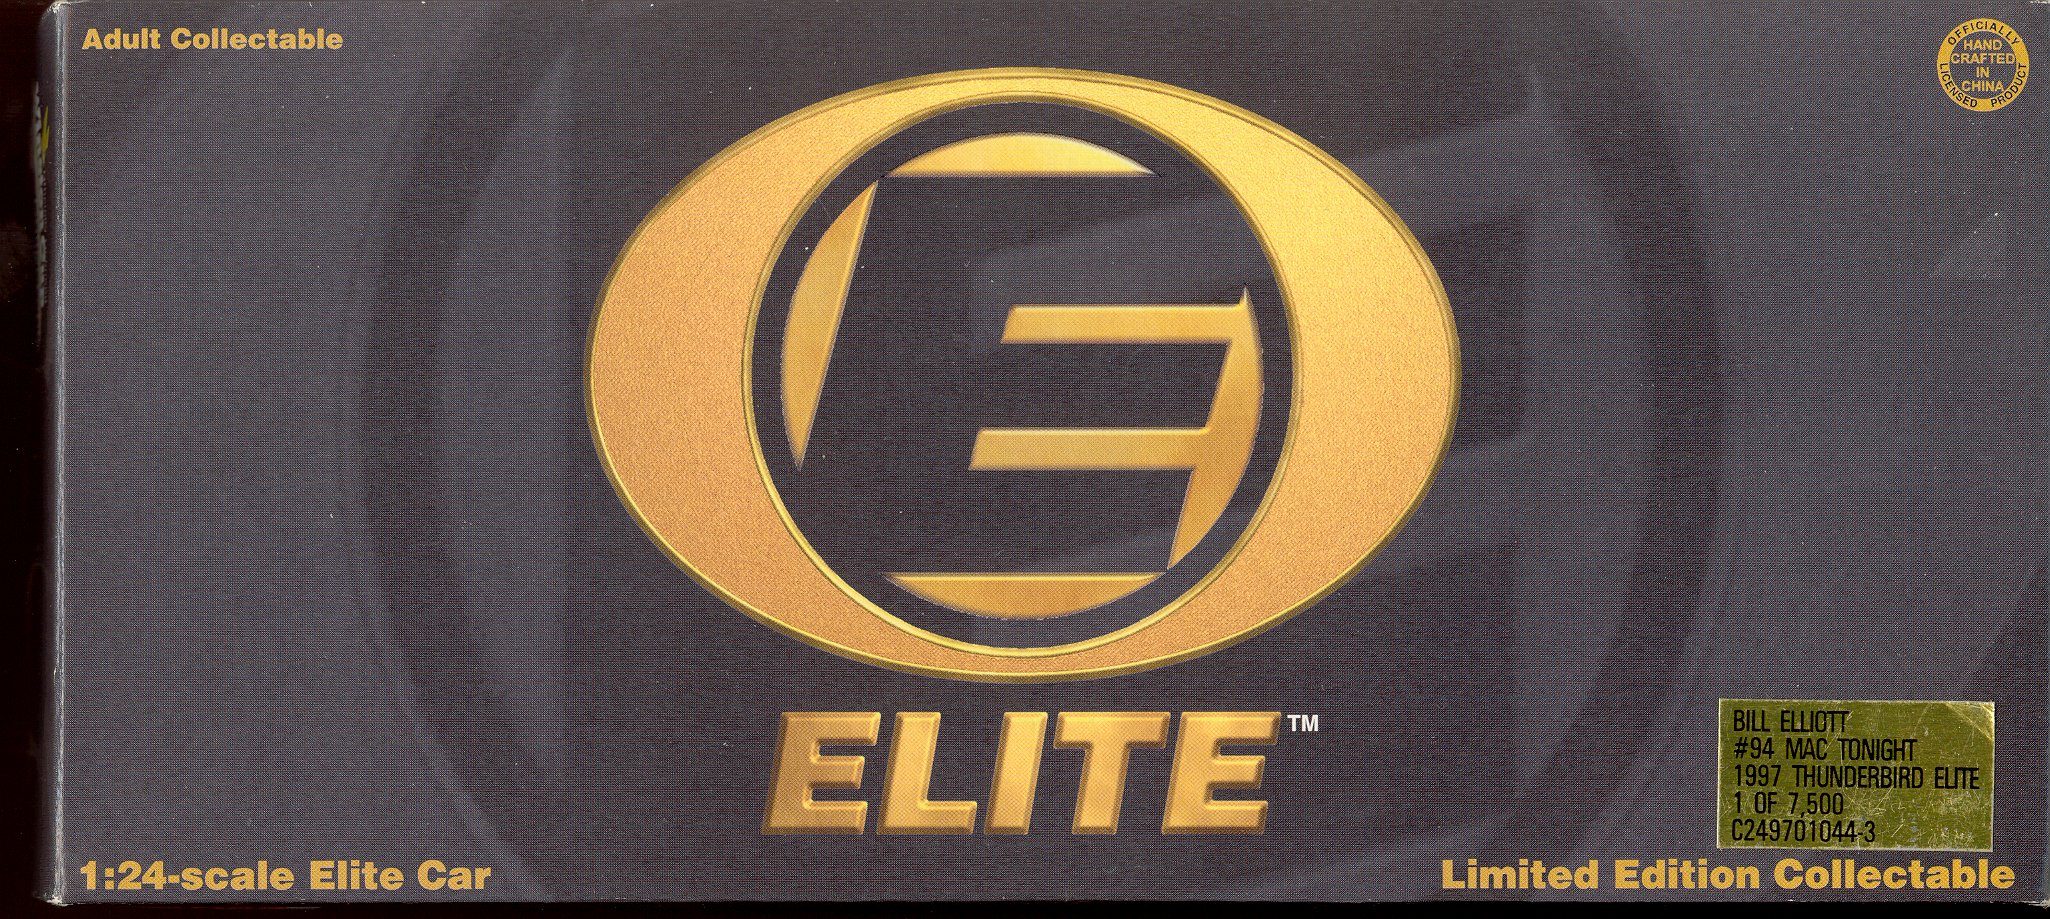 Bill Elliott , 1997 Action -RCCA Elite, #94 Mac Tonight, $100.00